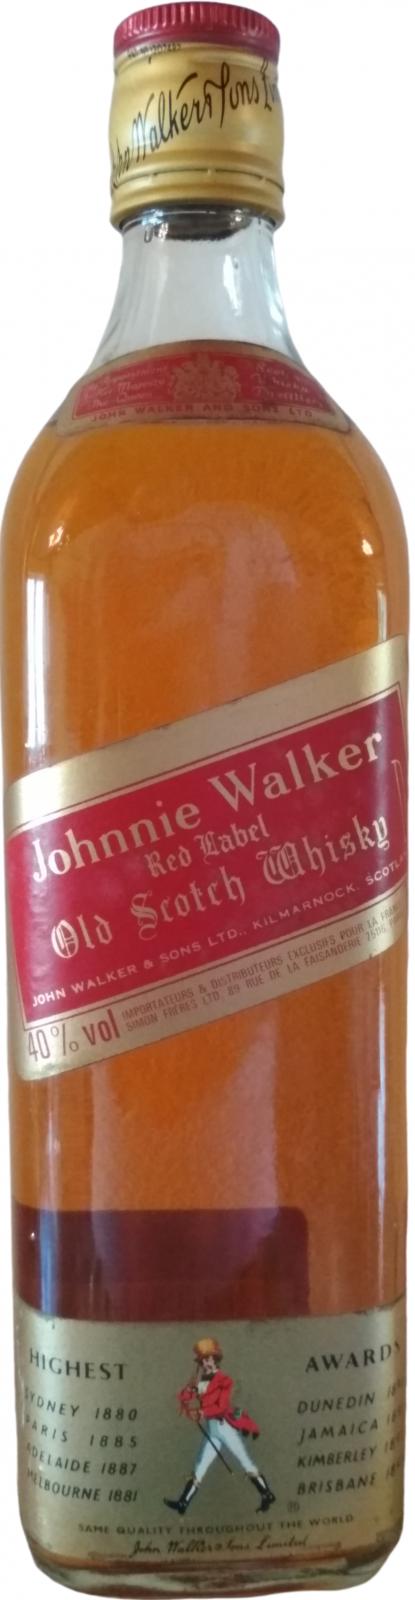 Johnnie Walker Red Label France simon freres ltd 40% 700ml